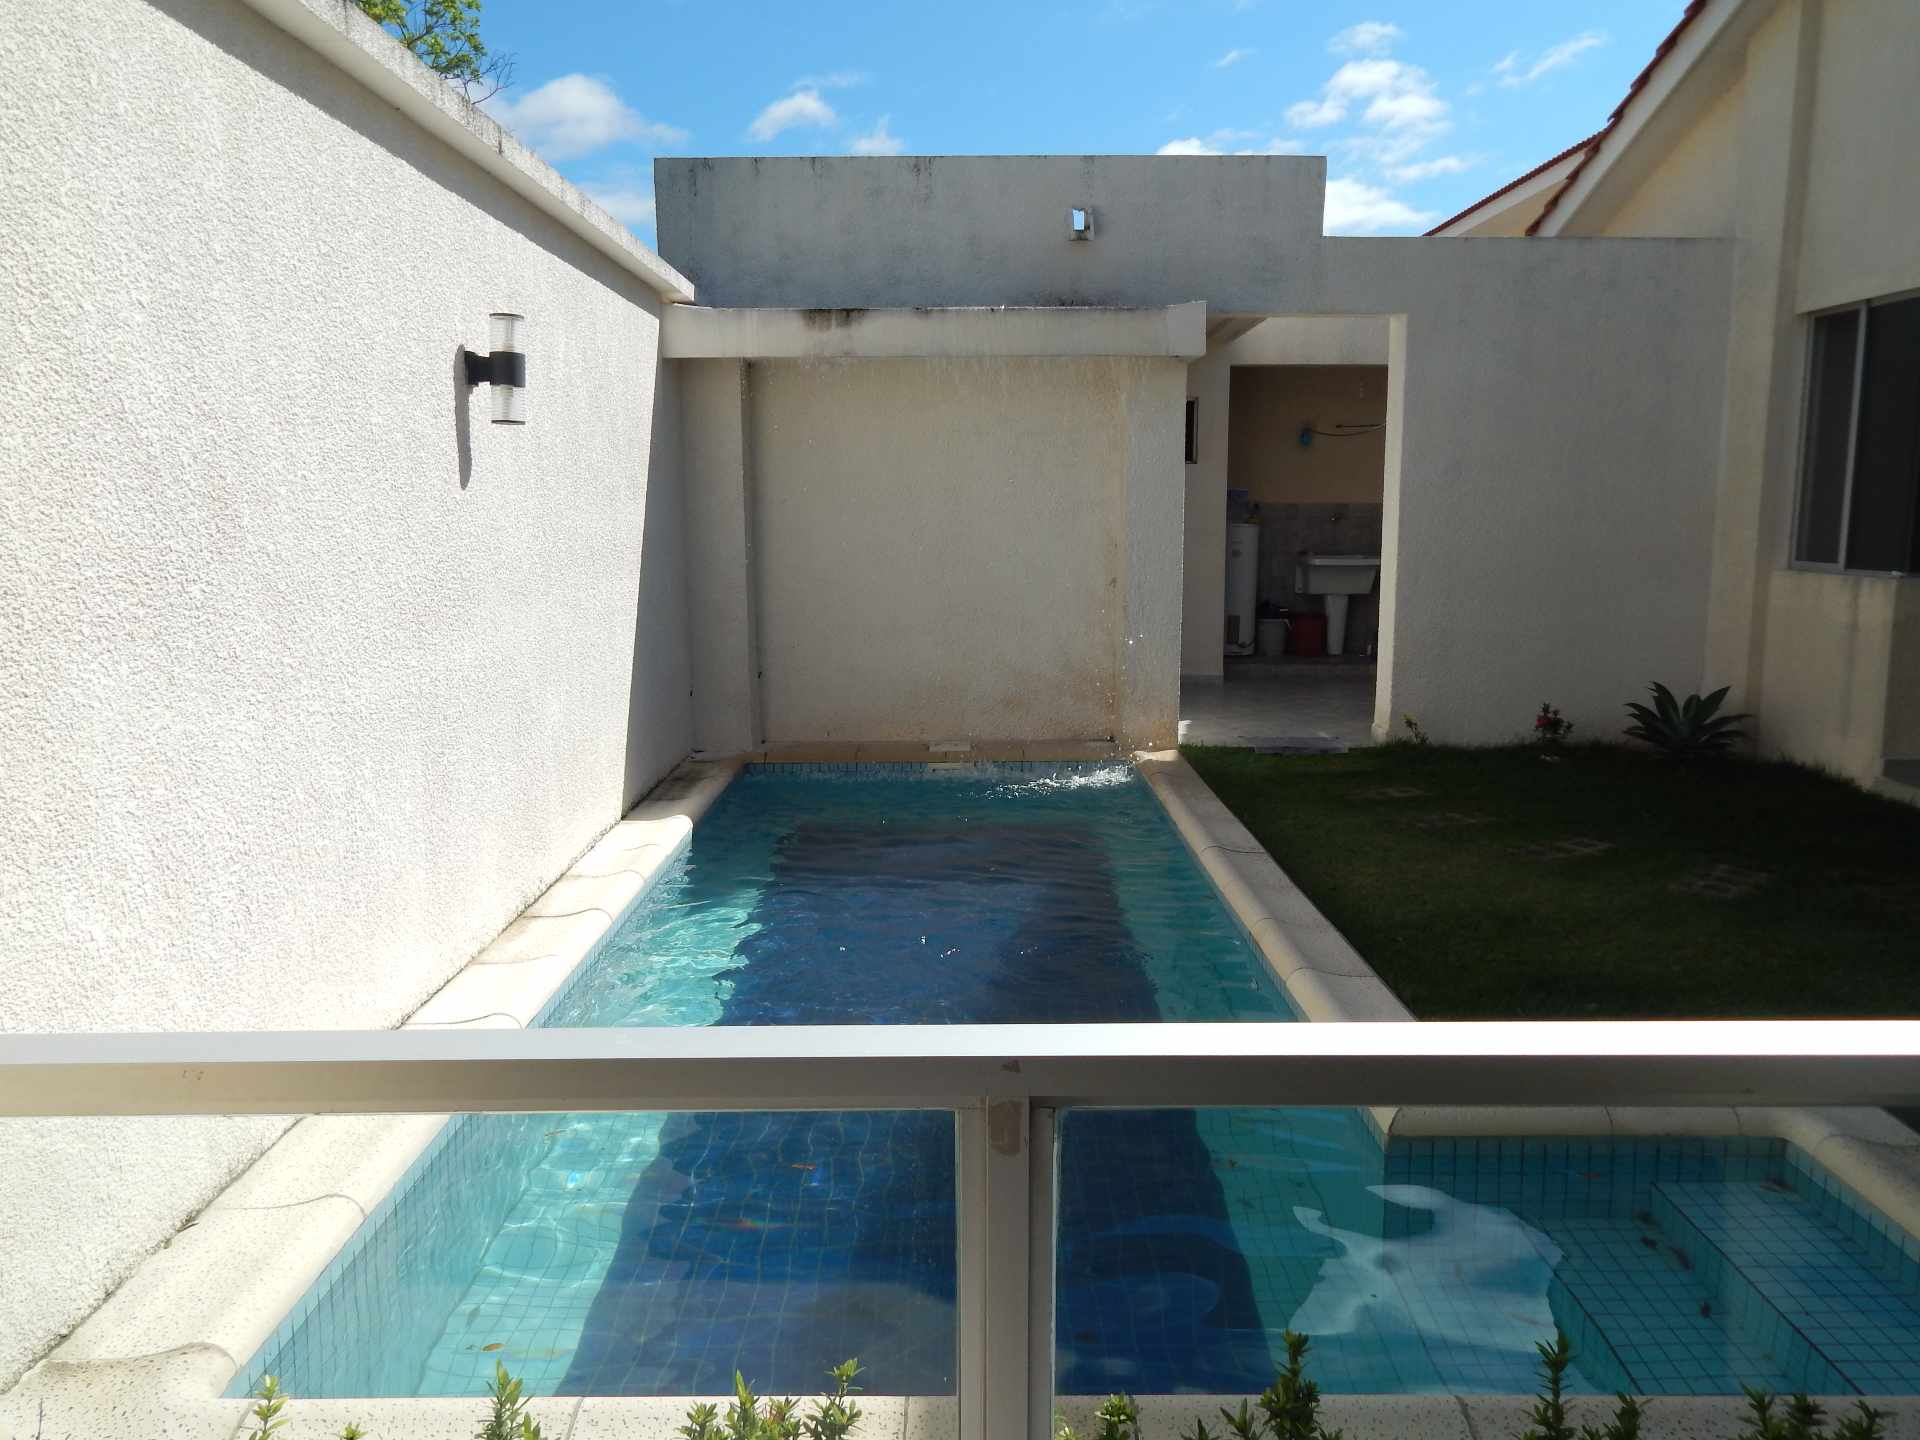 Casa en AlquilerCasa con piscina propia  en alquiler en el Urubo  Foto 13